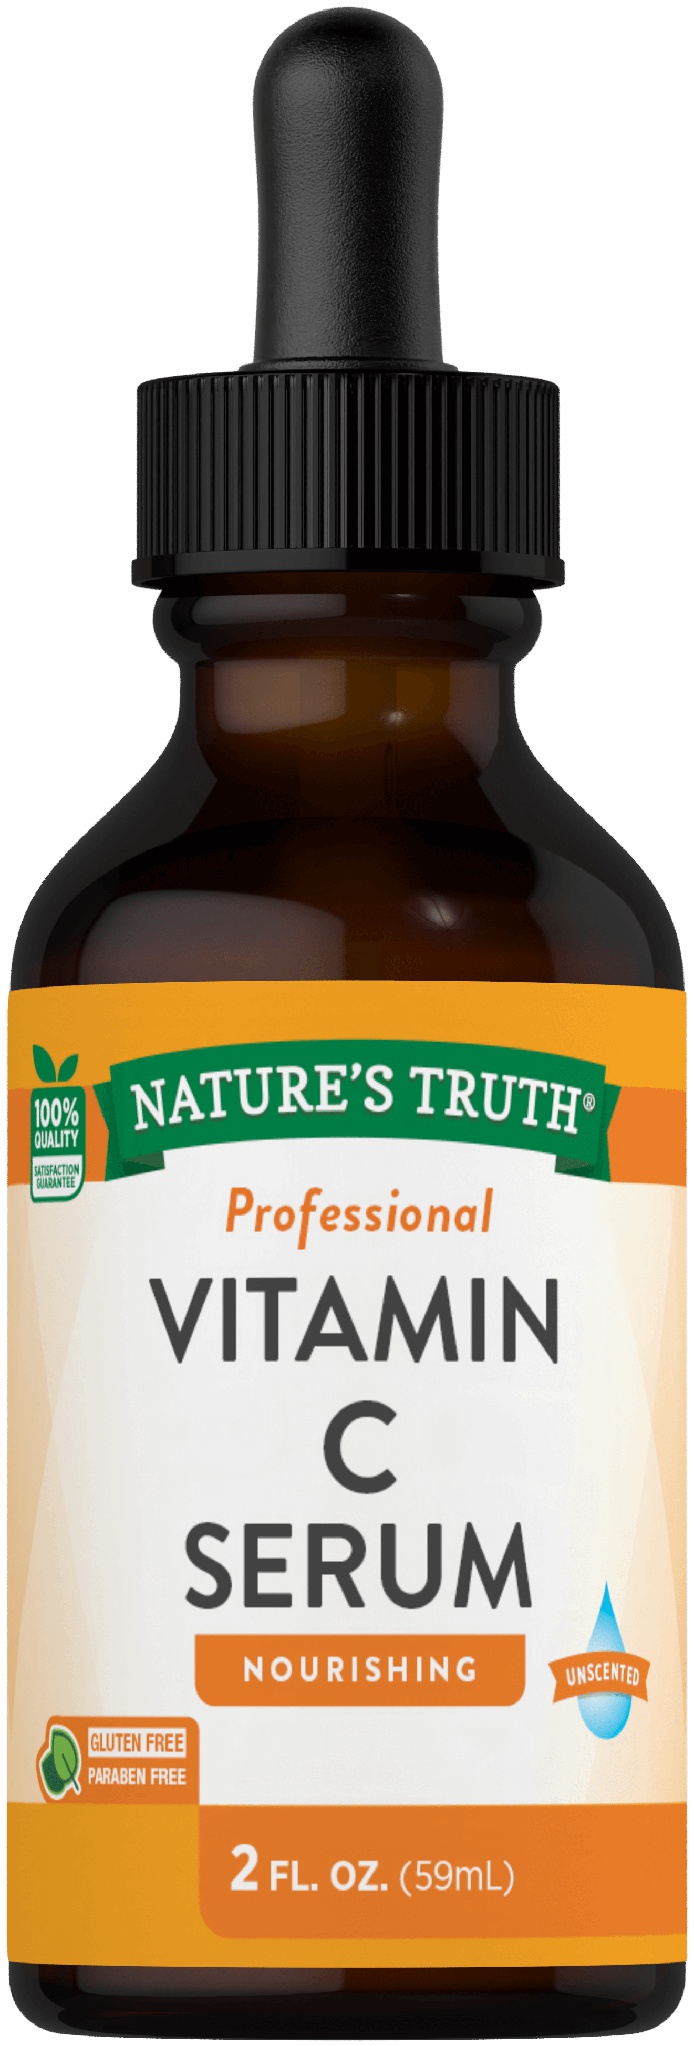 Nature’s truth Vitaminc C Serum